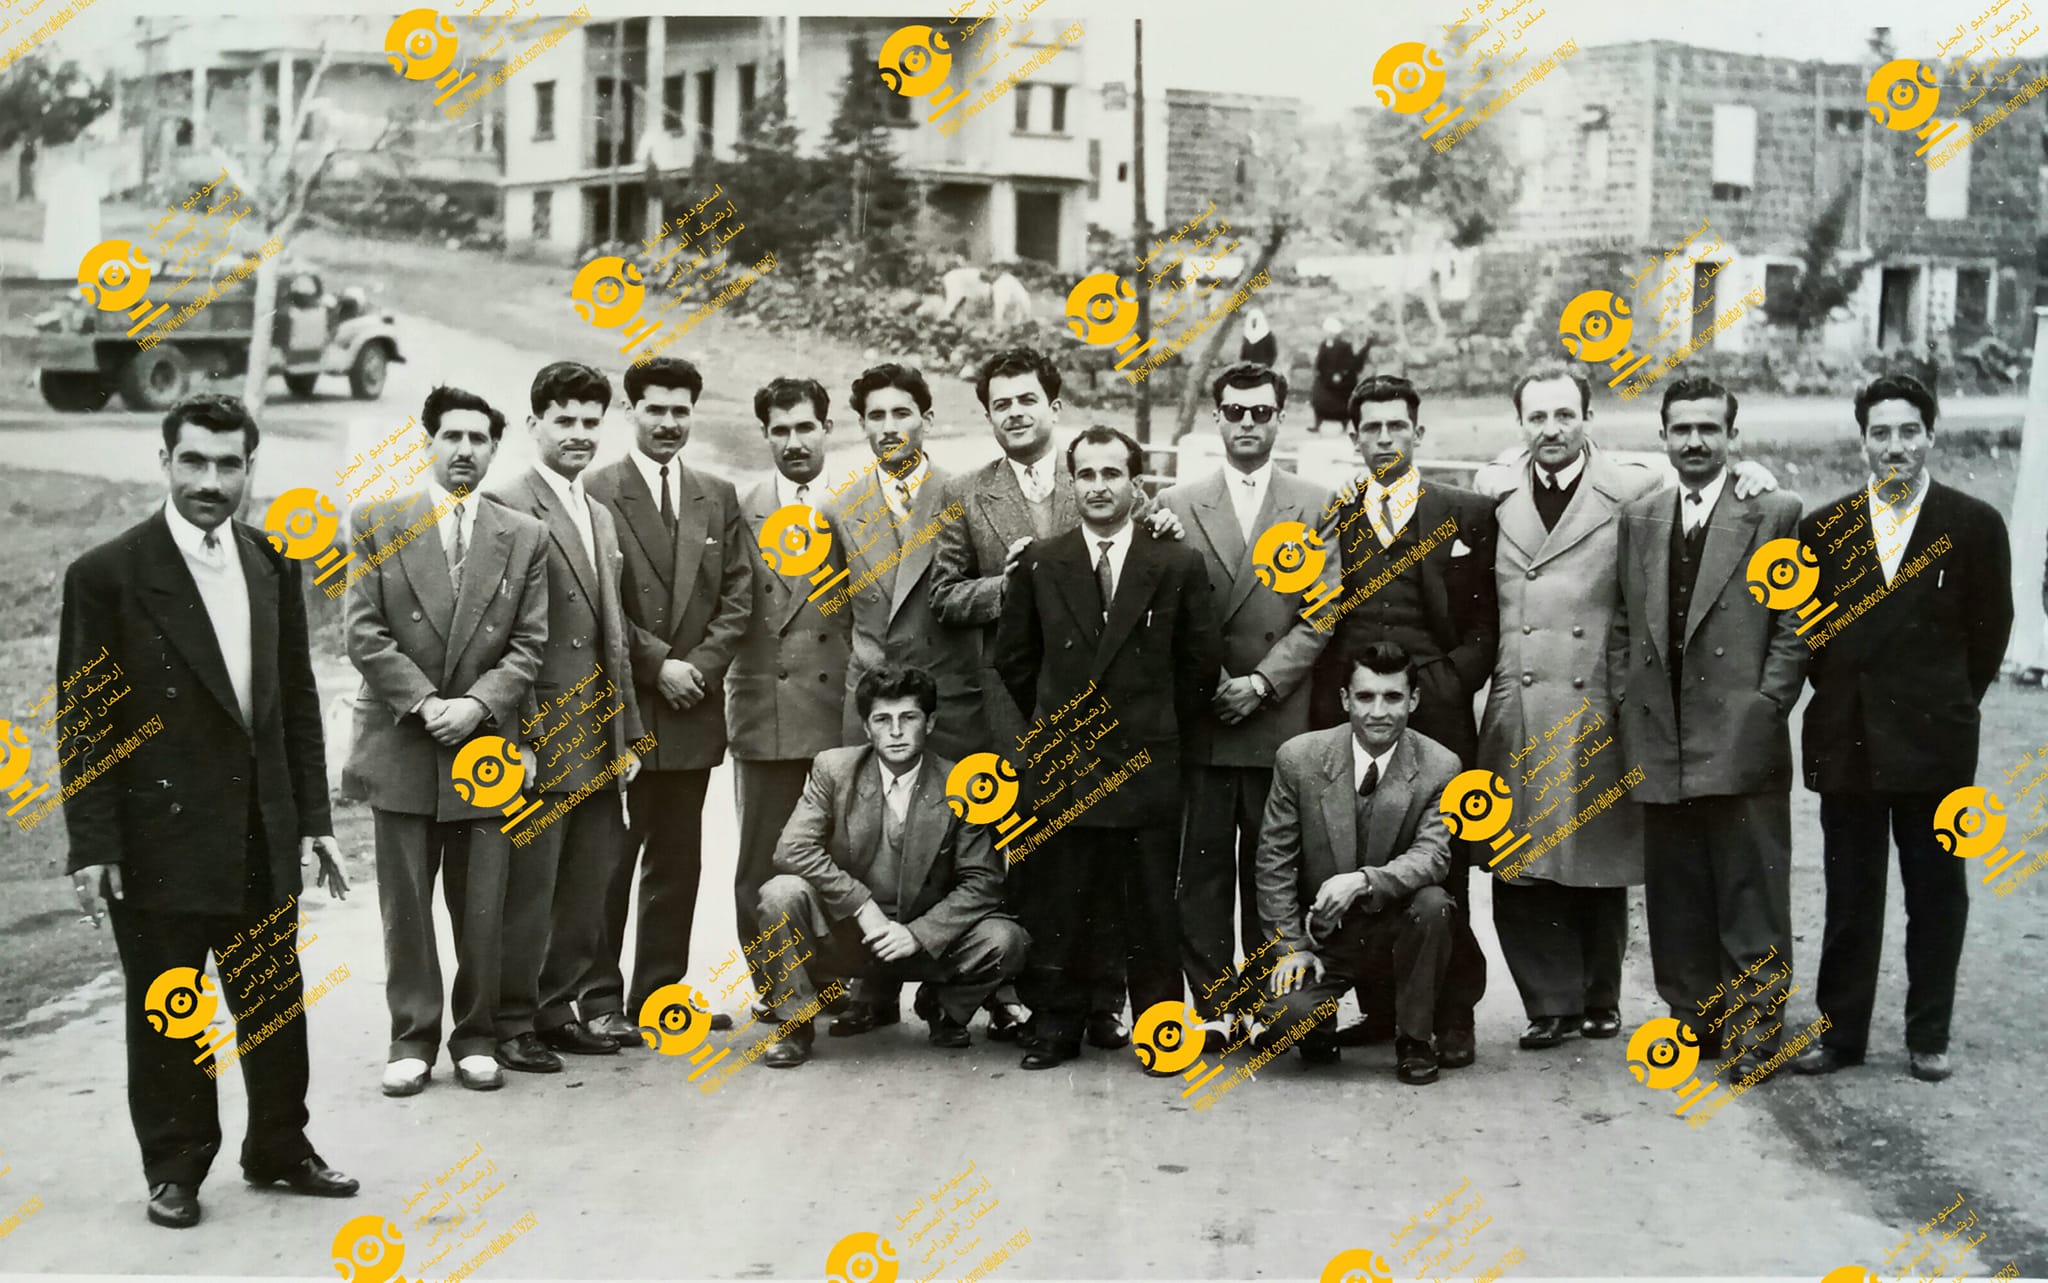 التاريخ السوري المعاصر - معلمون في السويداء عام 1957